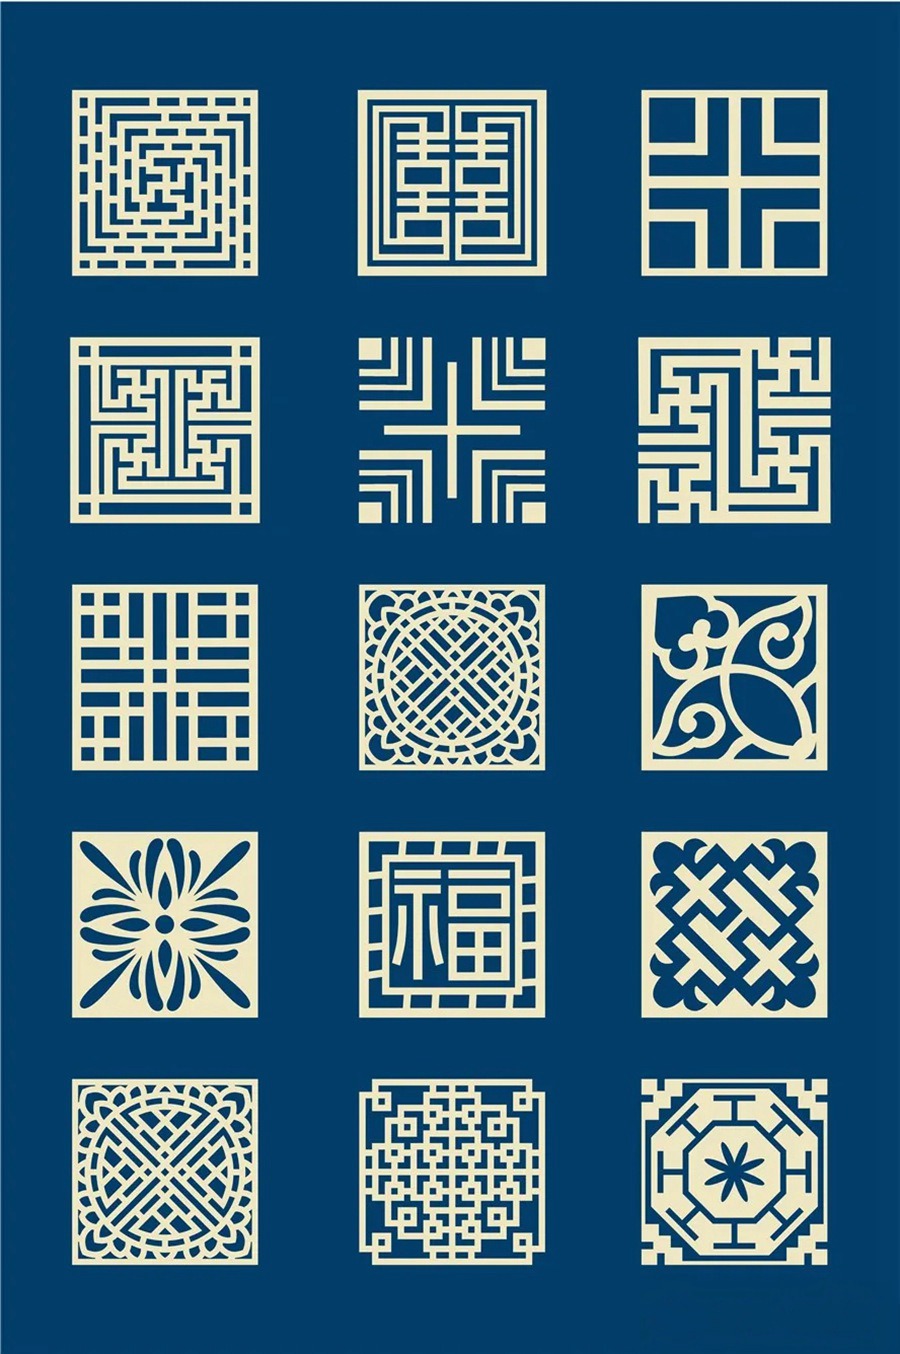 中国风传统古典青花瓷图案花纹图形纹样AI矢量模板花纹设计素材 图片素材 第15张